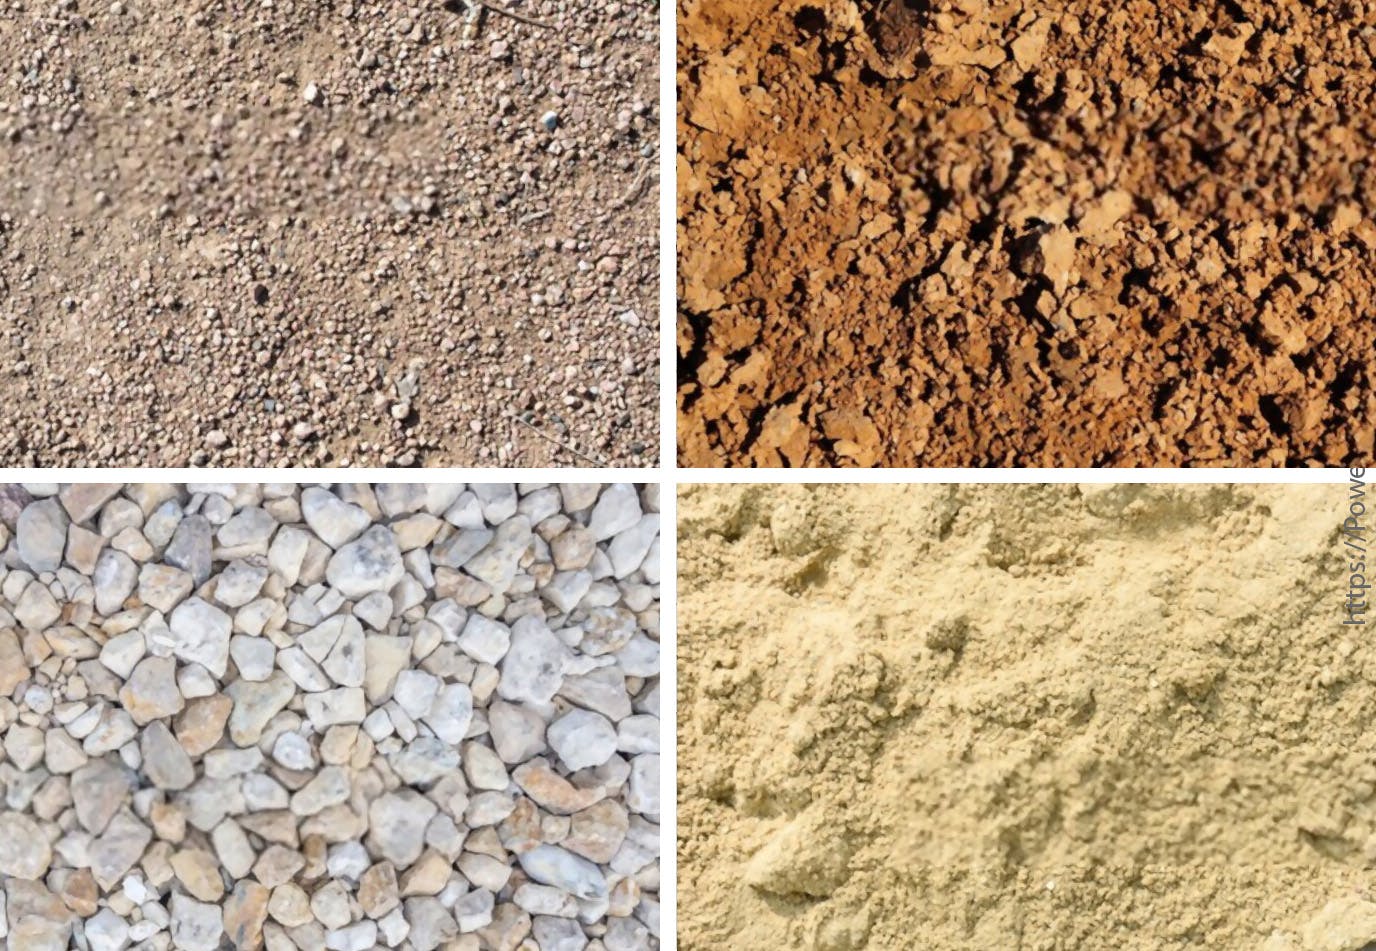 סוגי אדמה ומצע שונים להידוק - חצץ, עפר, חול, ומספר סוגי אדמה עם חלקיקים בגדלים שונים